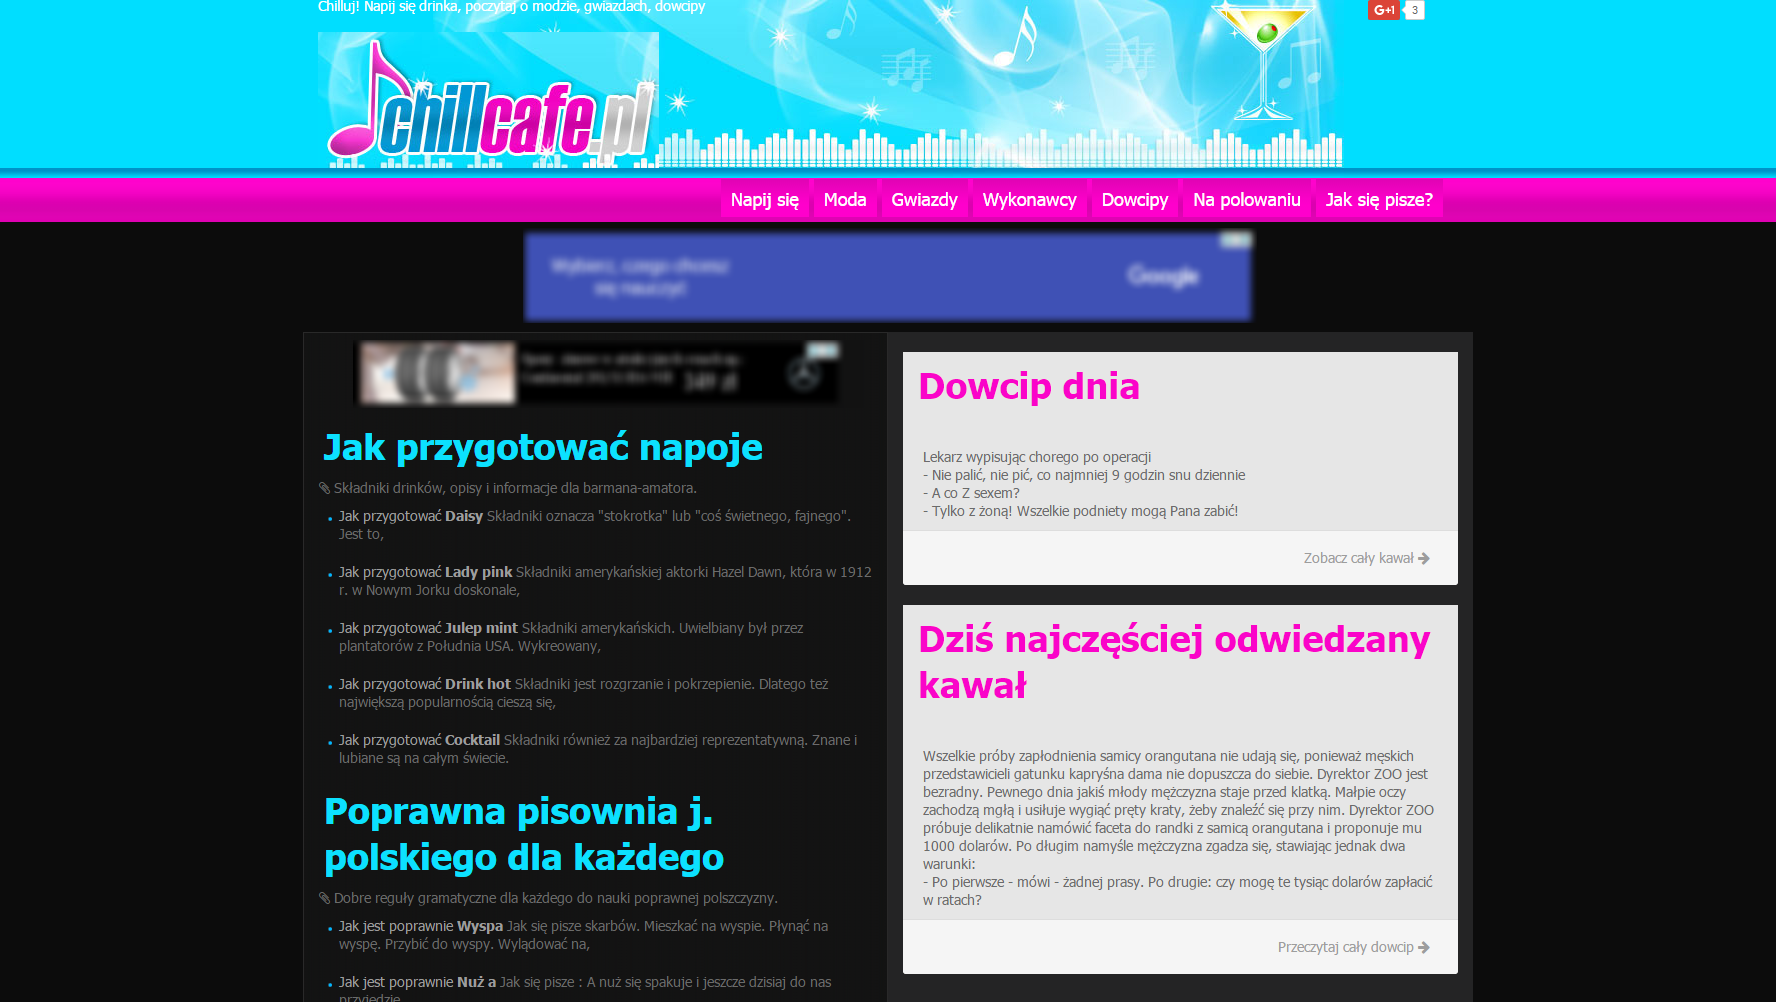 Projekt ChillCafe.pl